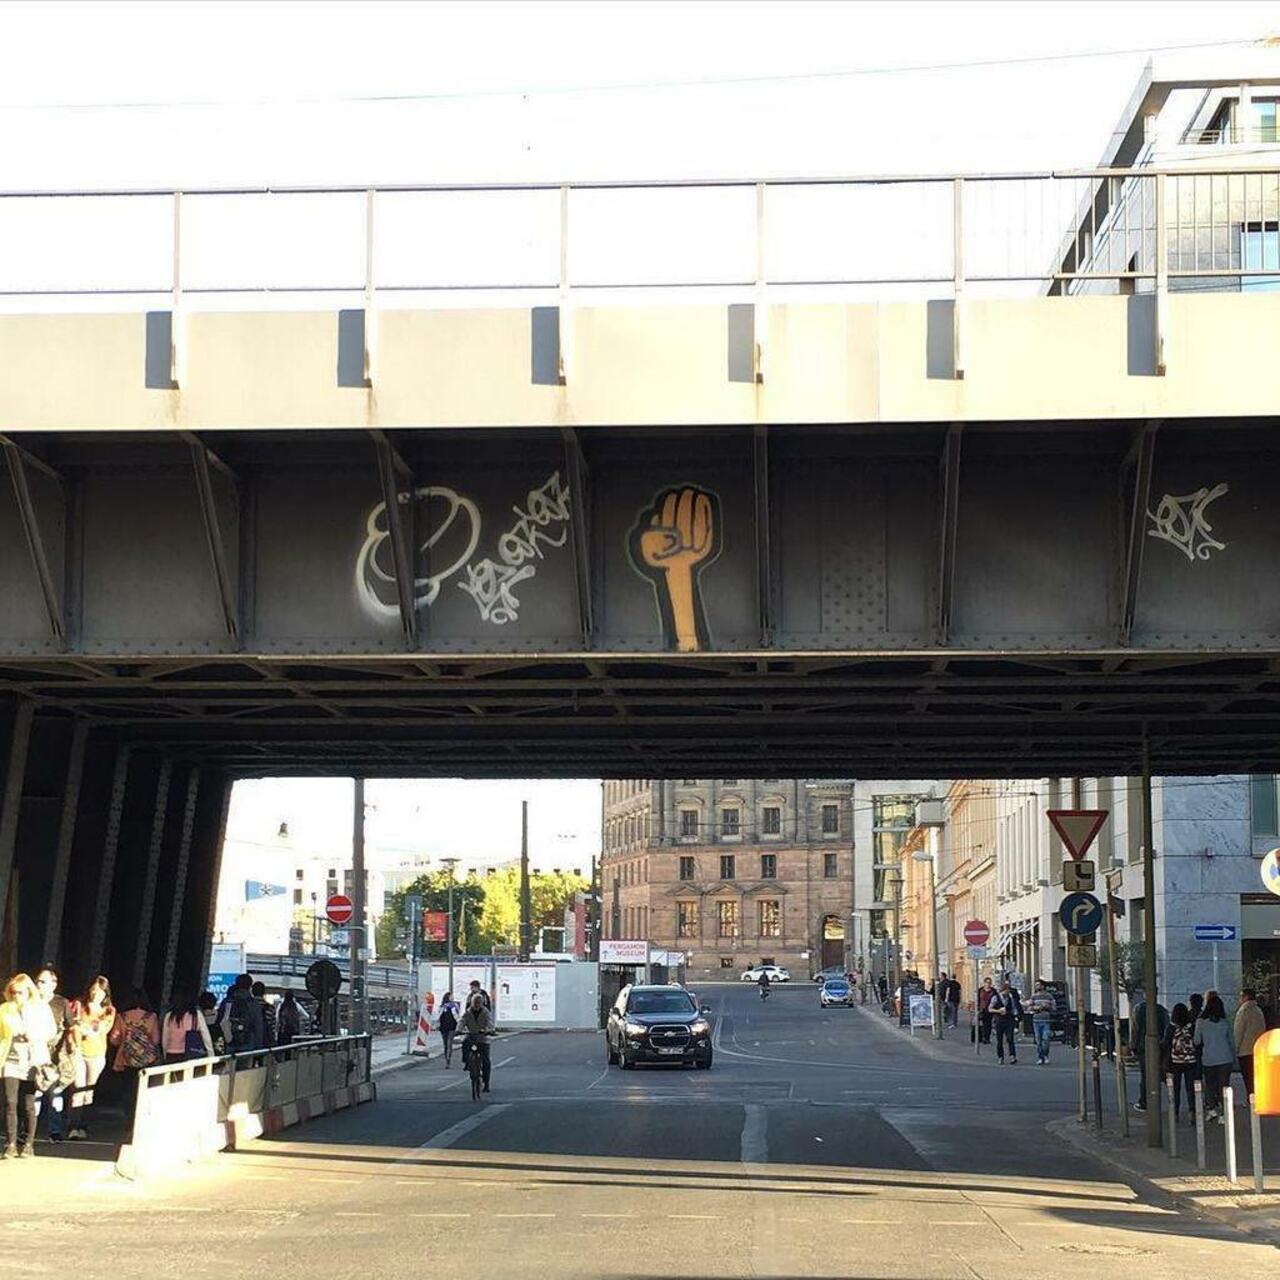 #kripoe #streetart #streetartberlin #berlinstreetart #urbanart #berlin #graffiti #spraypaint #fist by marants http://t.co/Fwmbv4XZm7